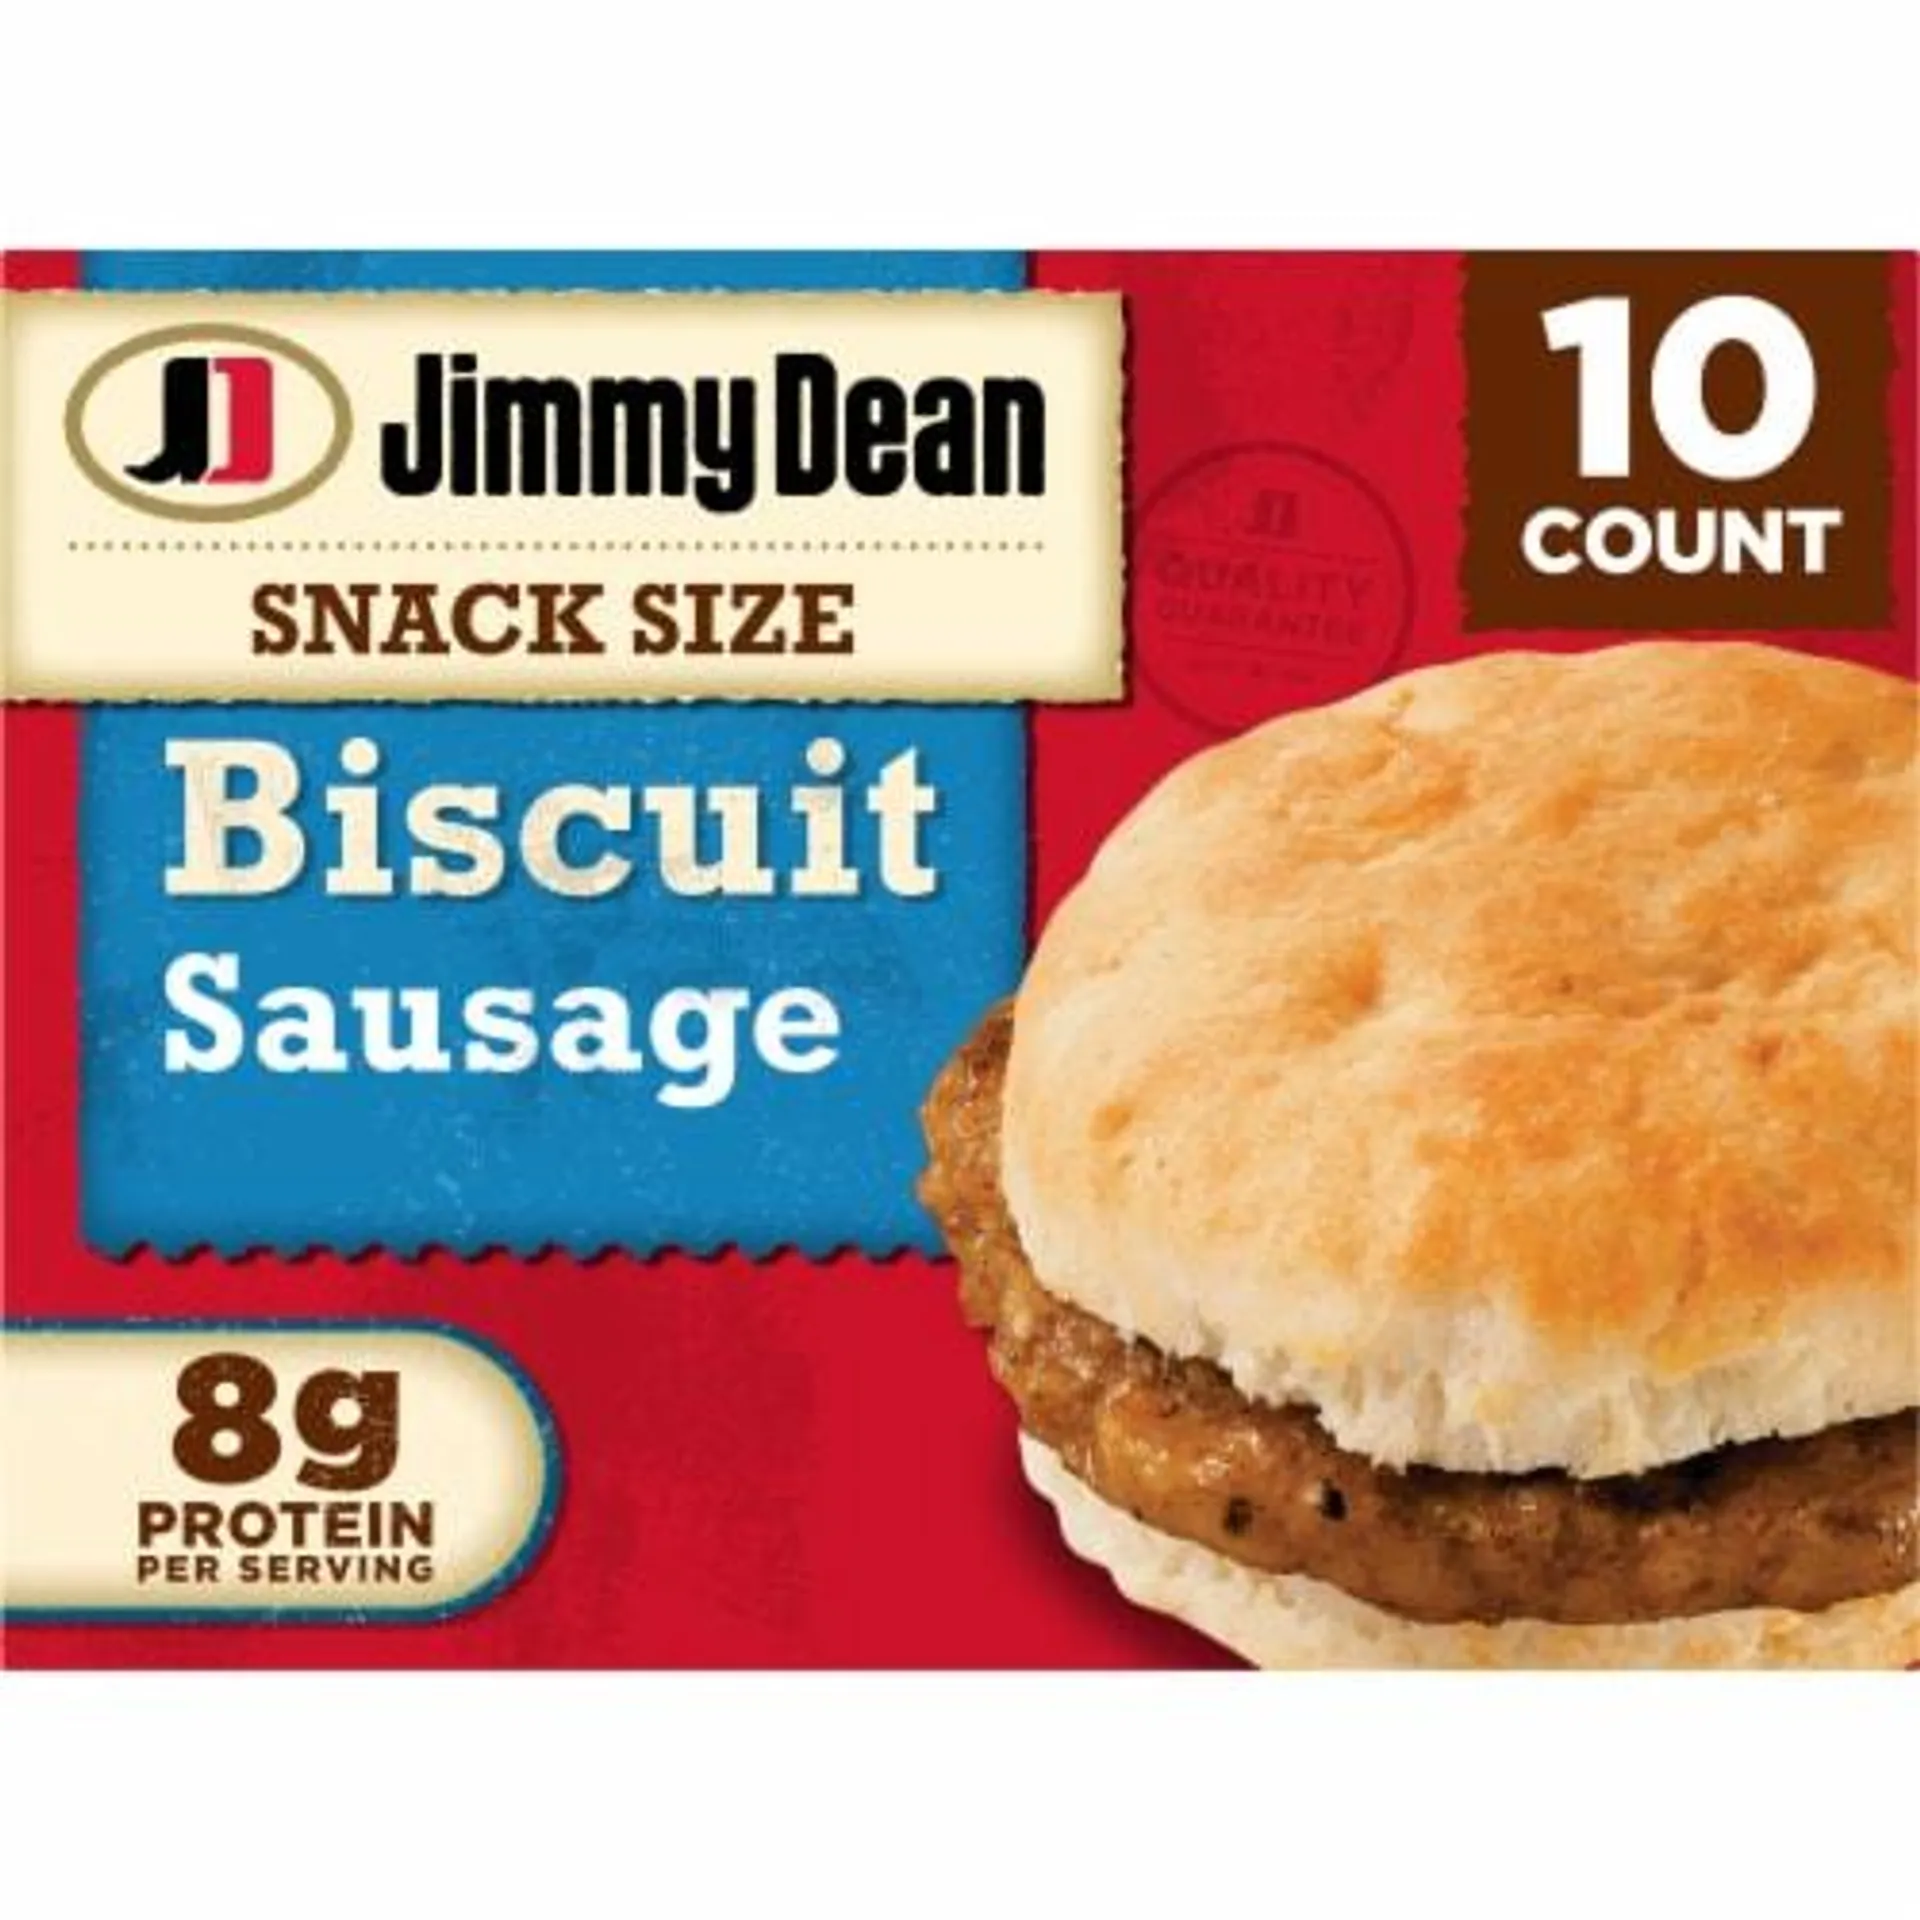 Jimmy Dean® Snack Size Sausage Biscuit Frozen Breakfast Sandwiches